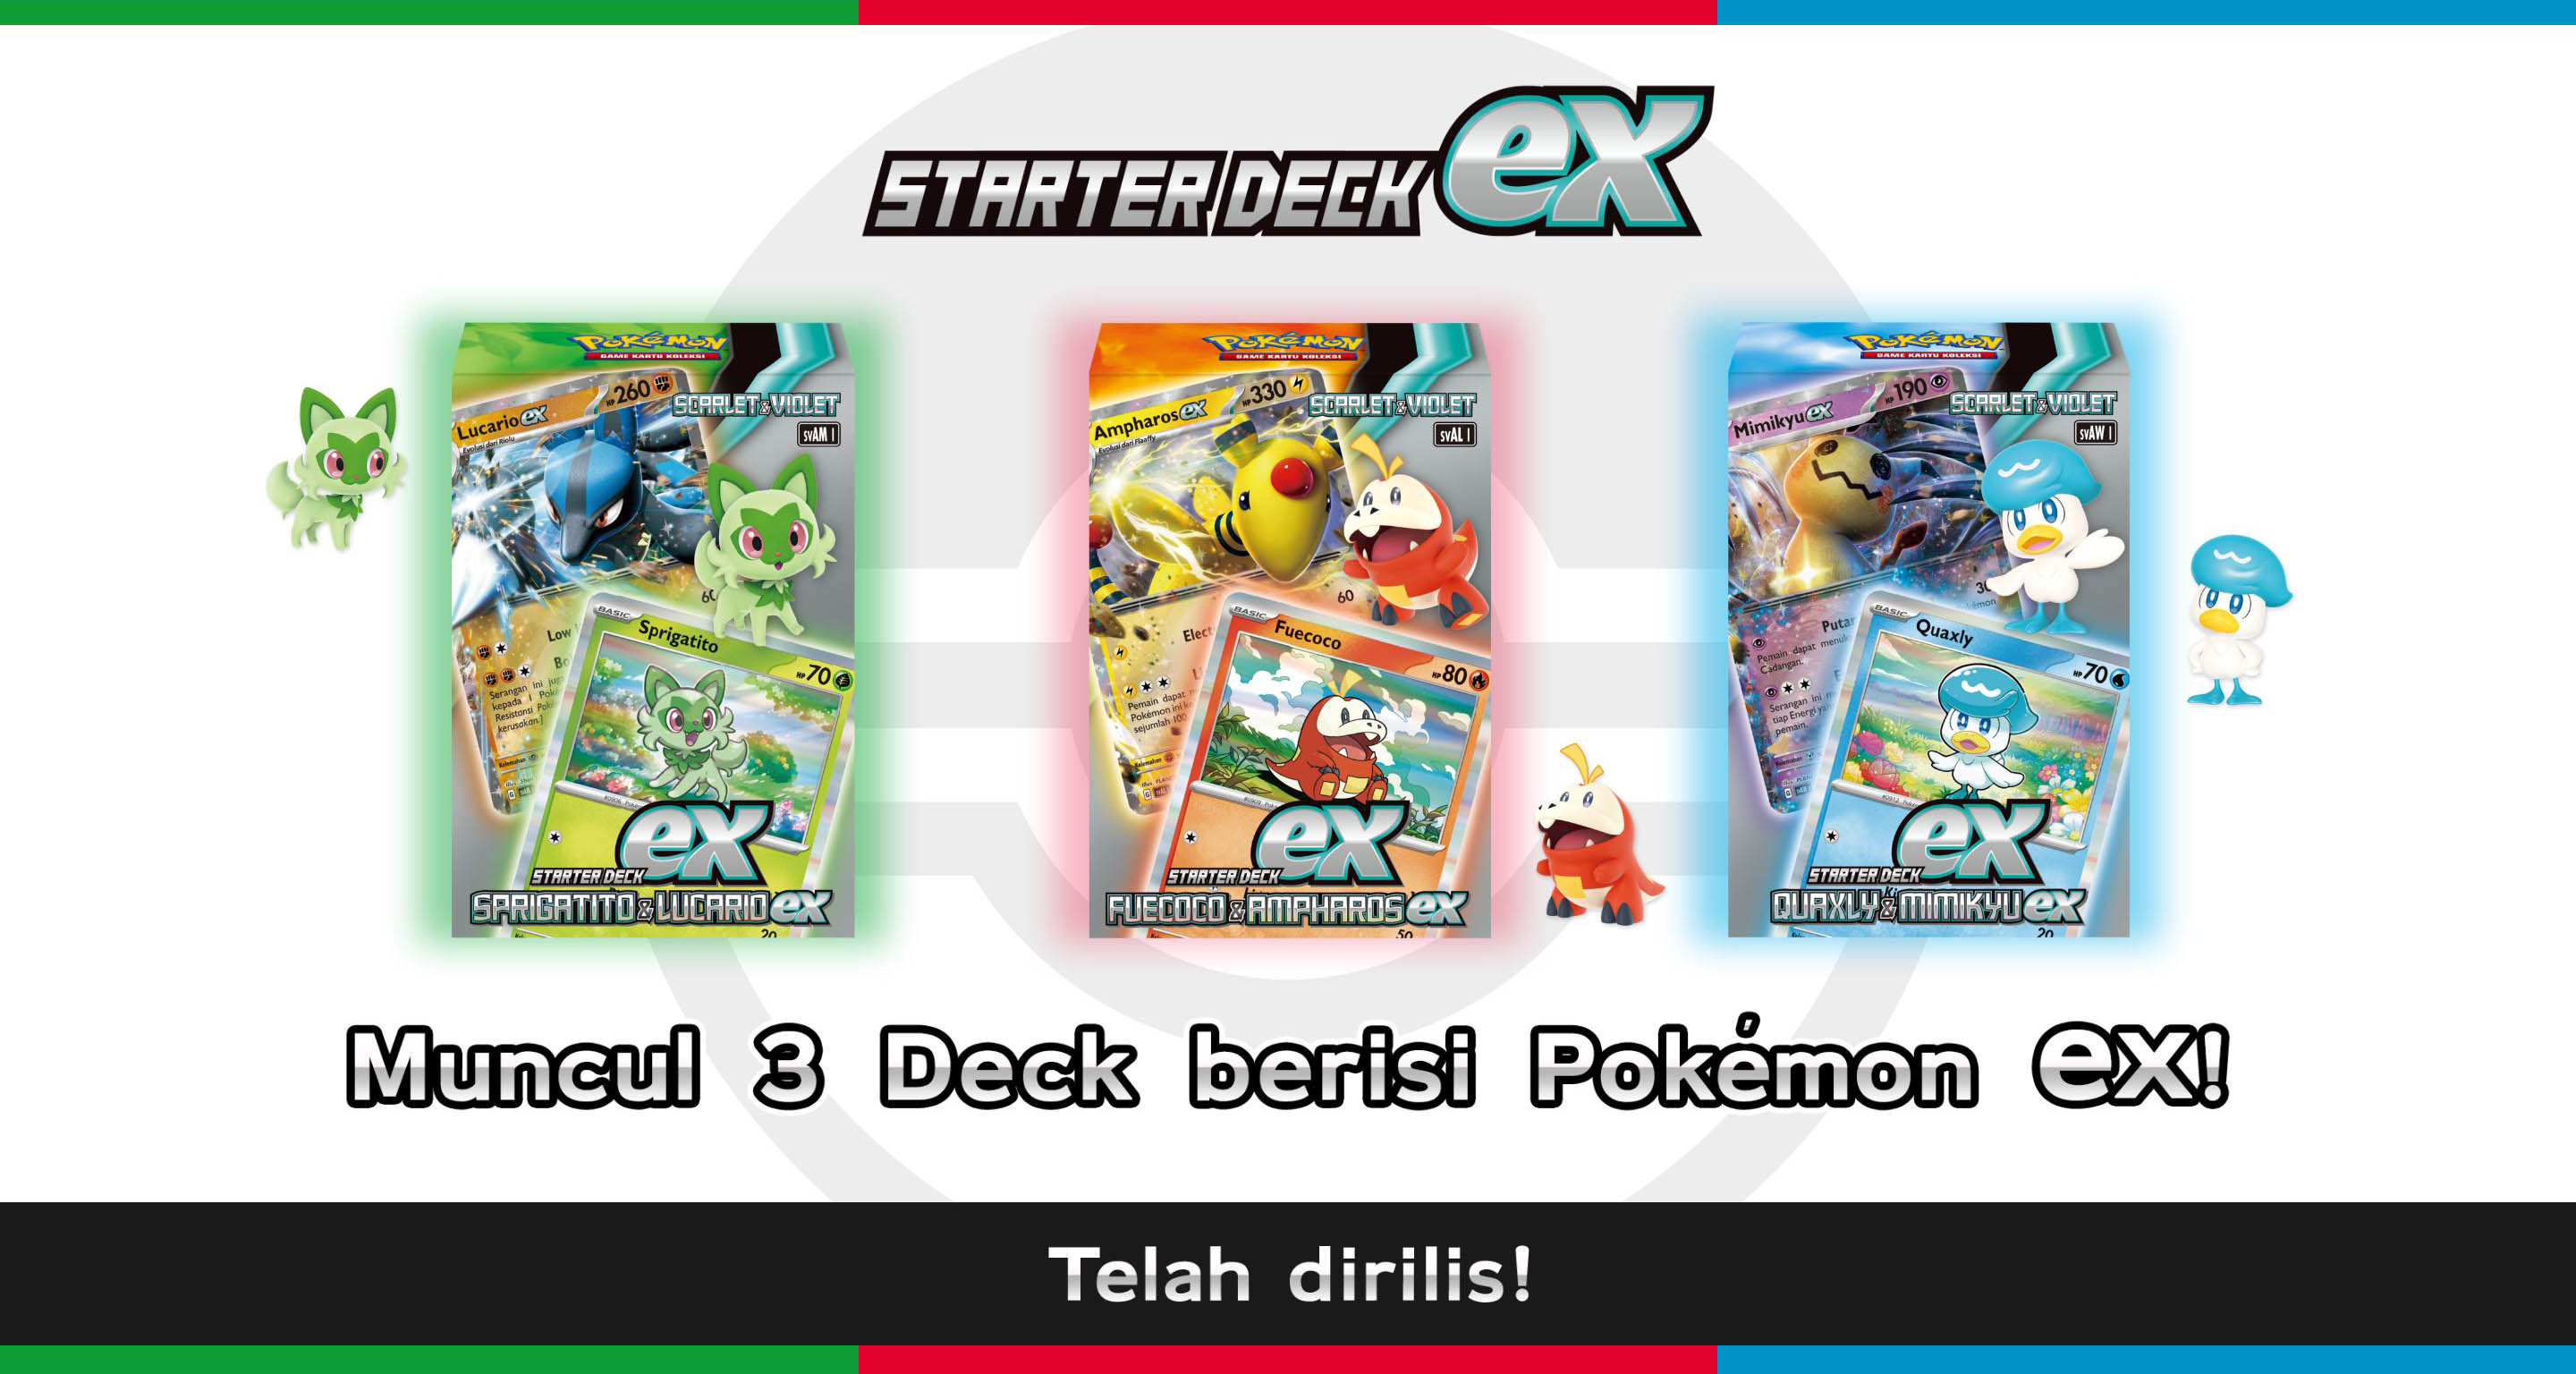 Starter Deck ex Sprigatito & Lucario ex, Fuecoco & Ampharos ex, Quaxly & Mimikyu ex. Muncul 3 Deck berisi Pokémon ex! Telah dirilis!